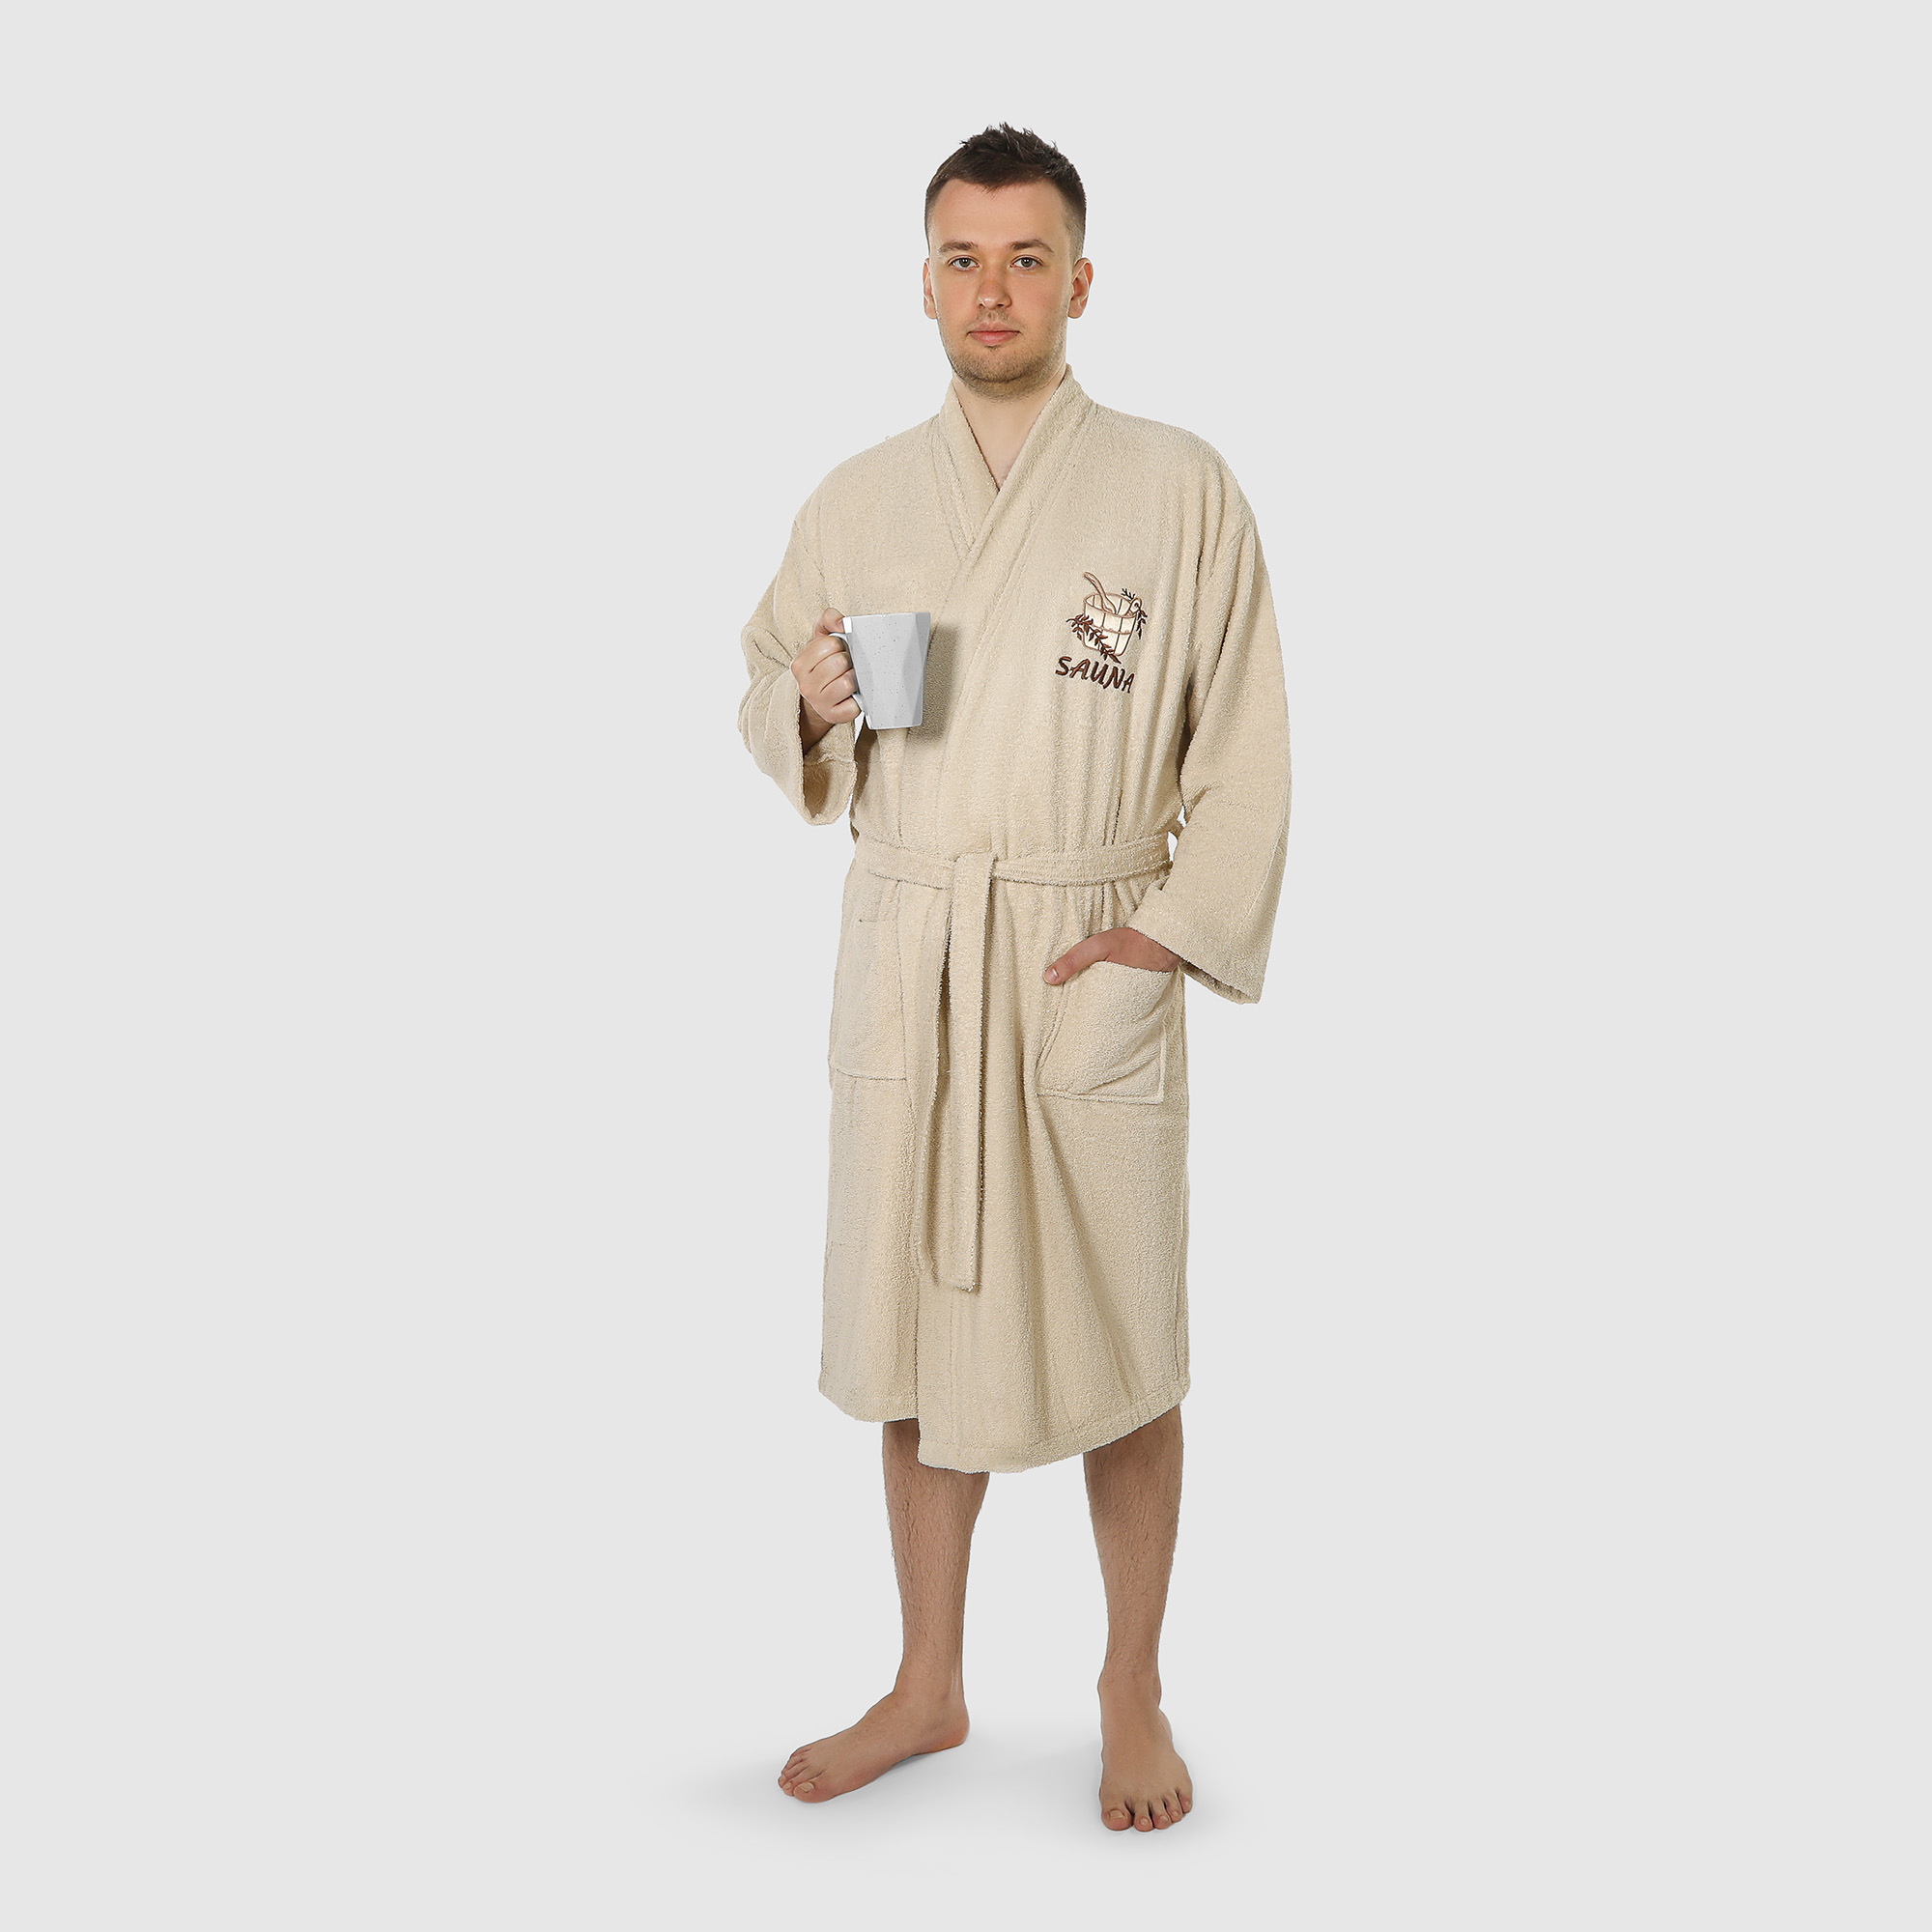 Халат мужской махровый Asil Sauna Kimono brown XL халат мужской asil sauna brown xxxl вафельный с капюшоном